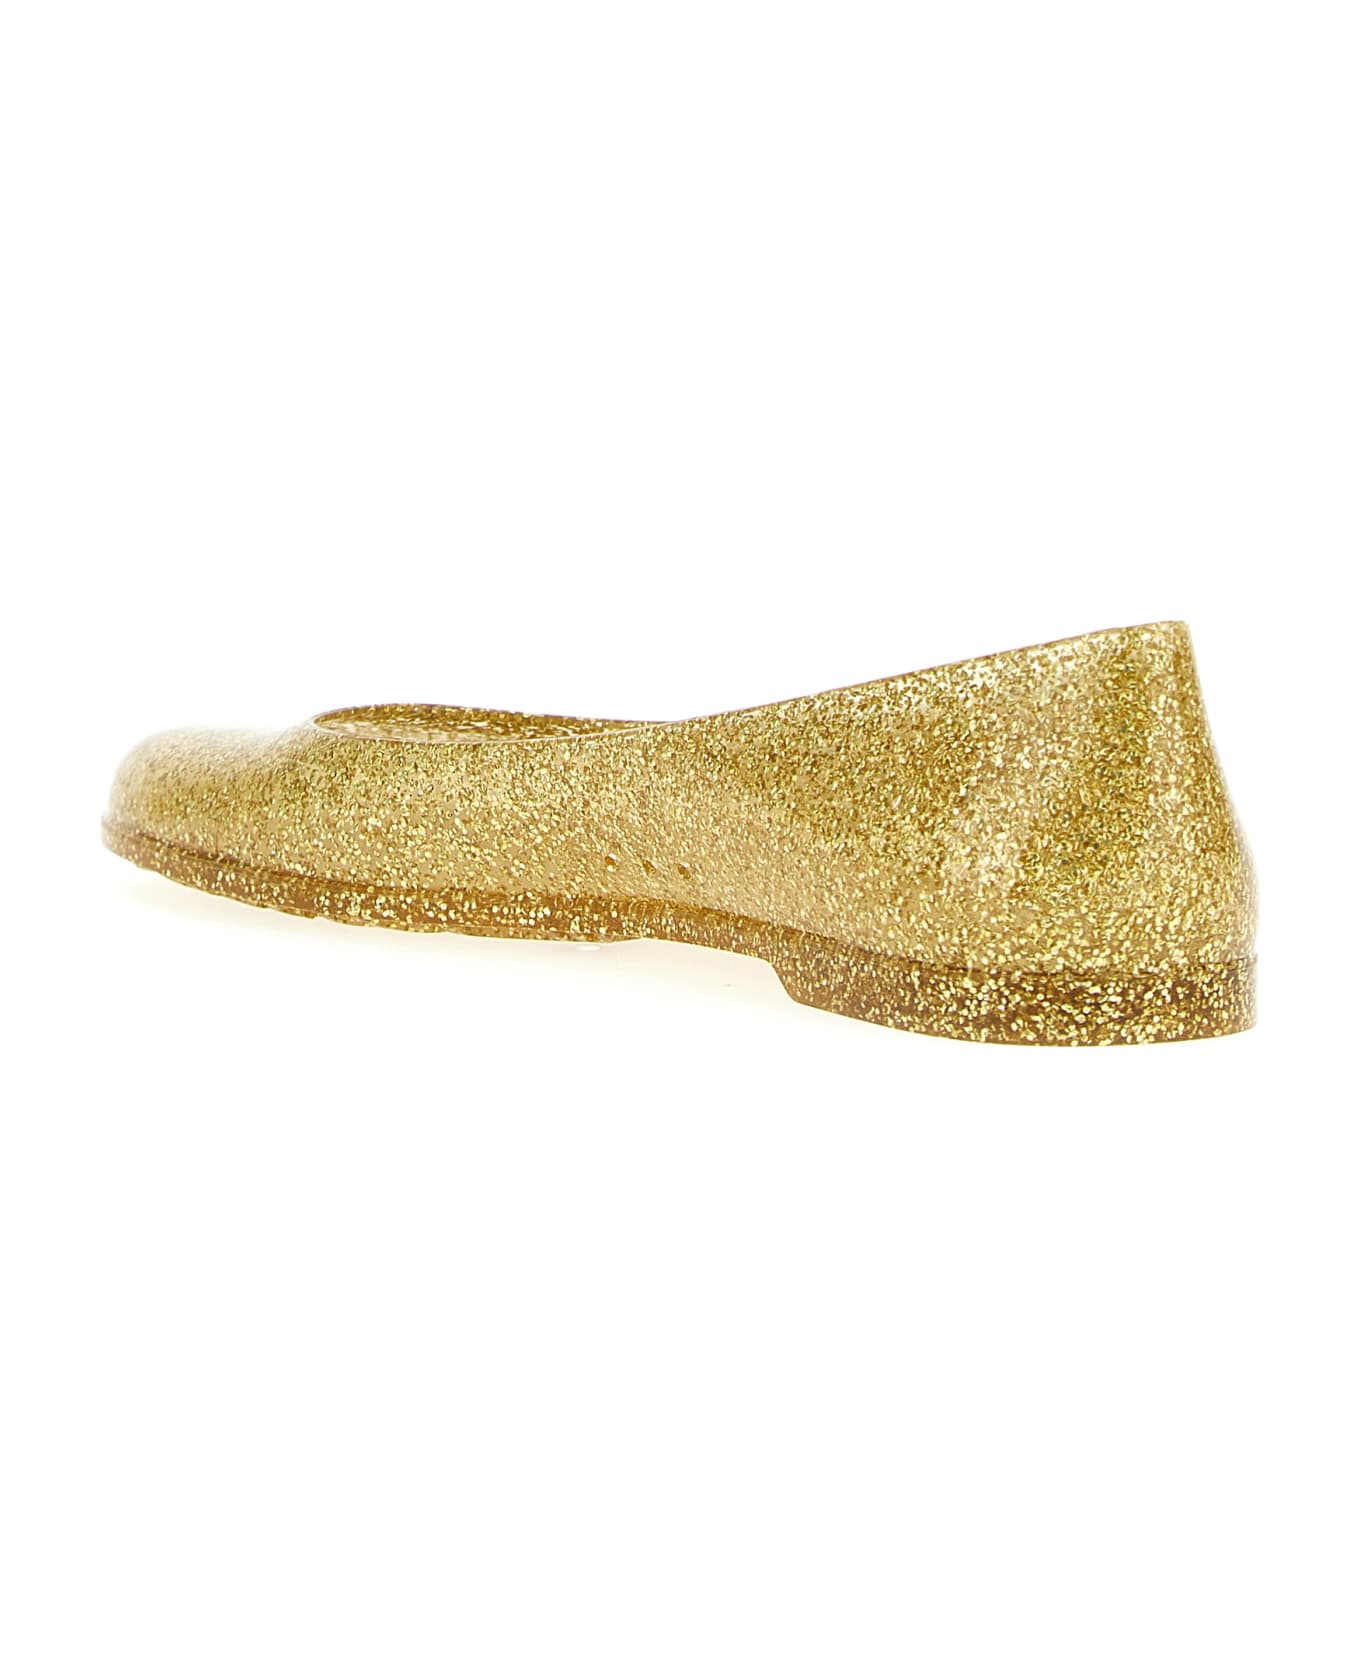 Loewe 'loewe Toy' Capsule Paula's Ibiza Ballet Flats - Gold